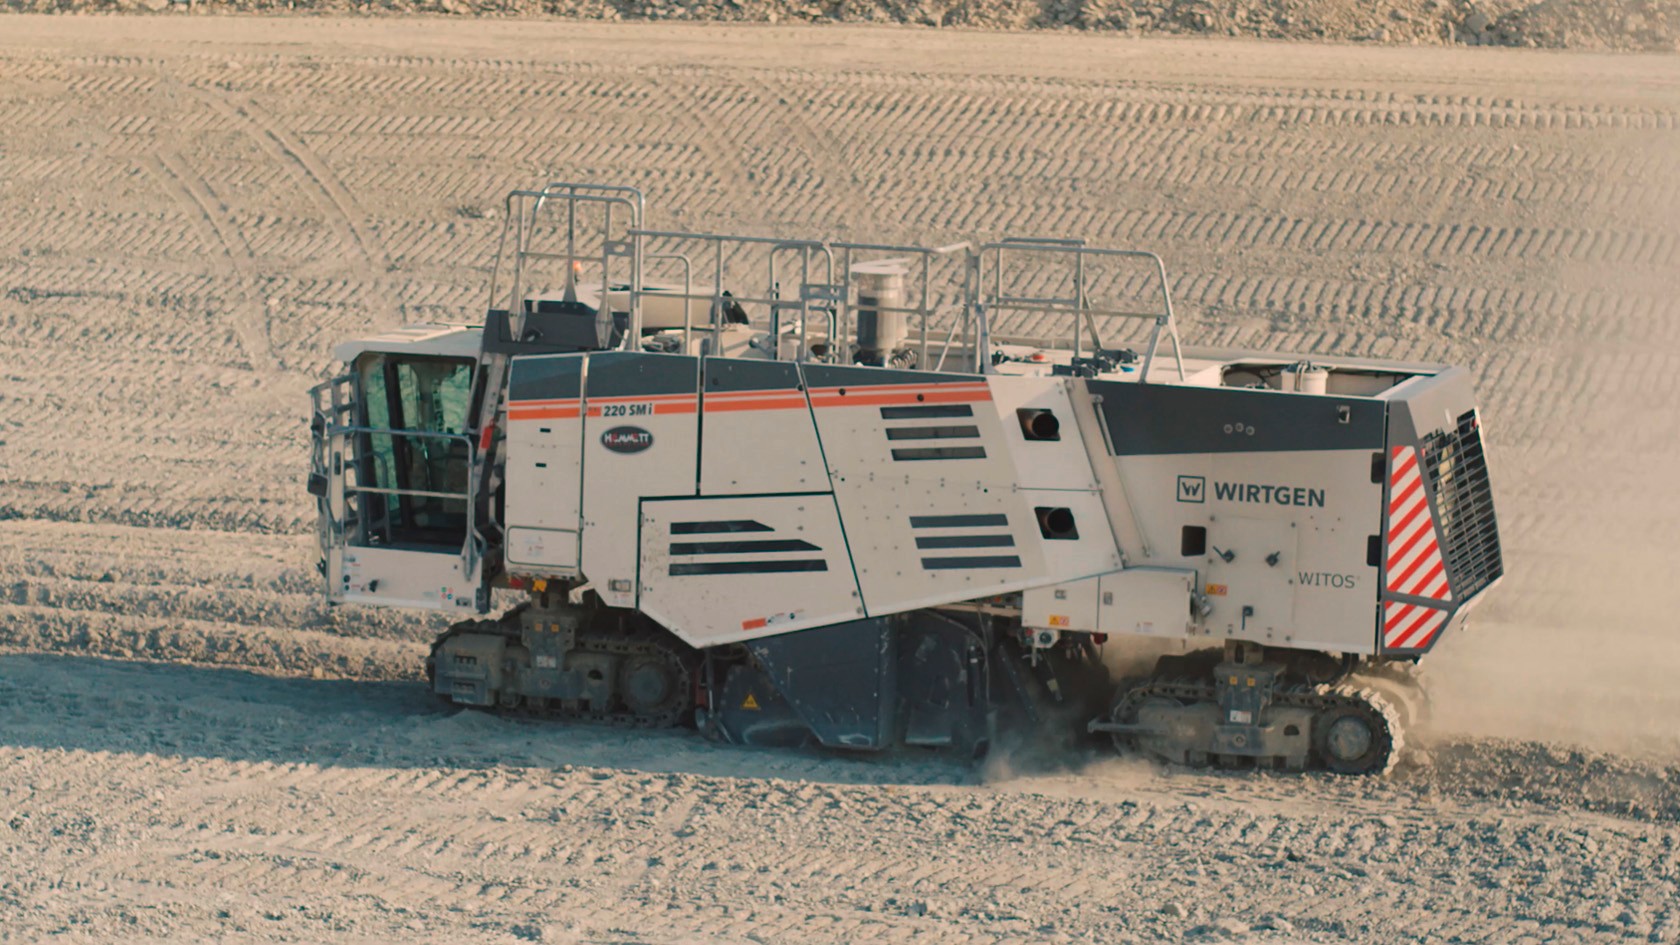  El Surface Miner 220 SMI durante el trazado del terreno